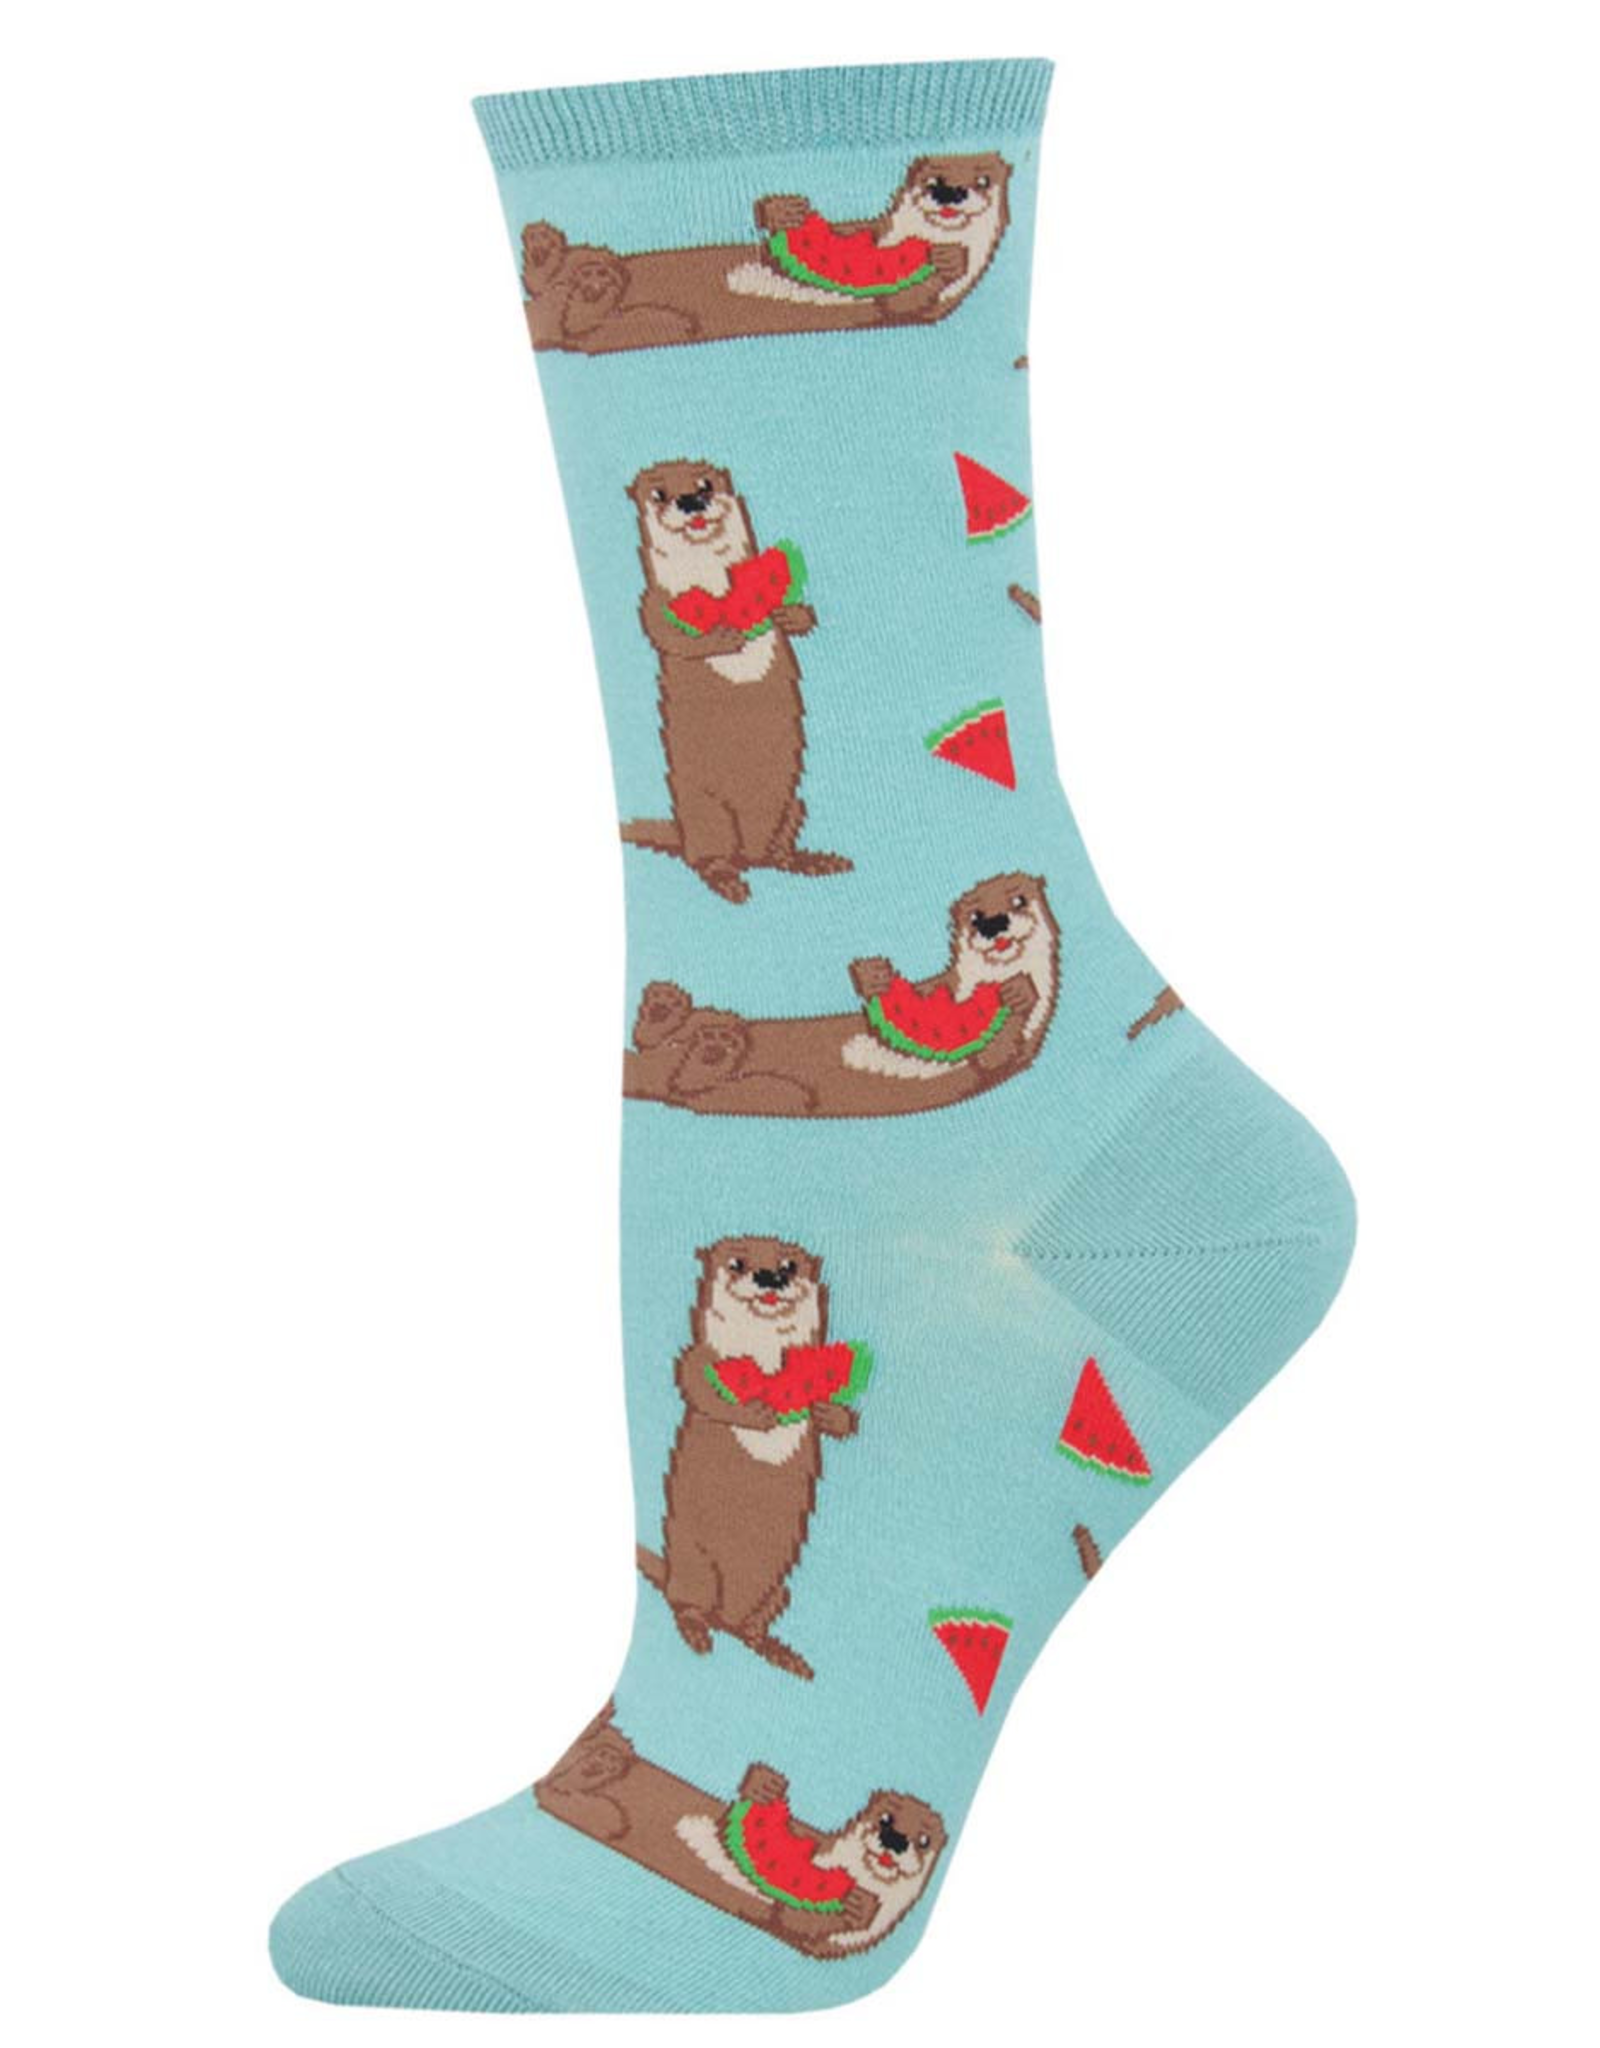 Socksmith Women's Sky Ottermelon Socks